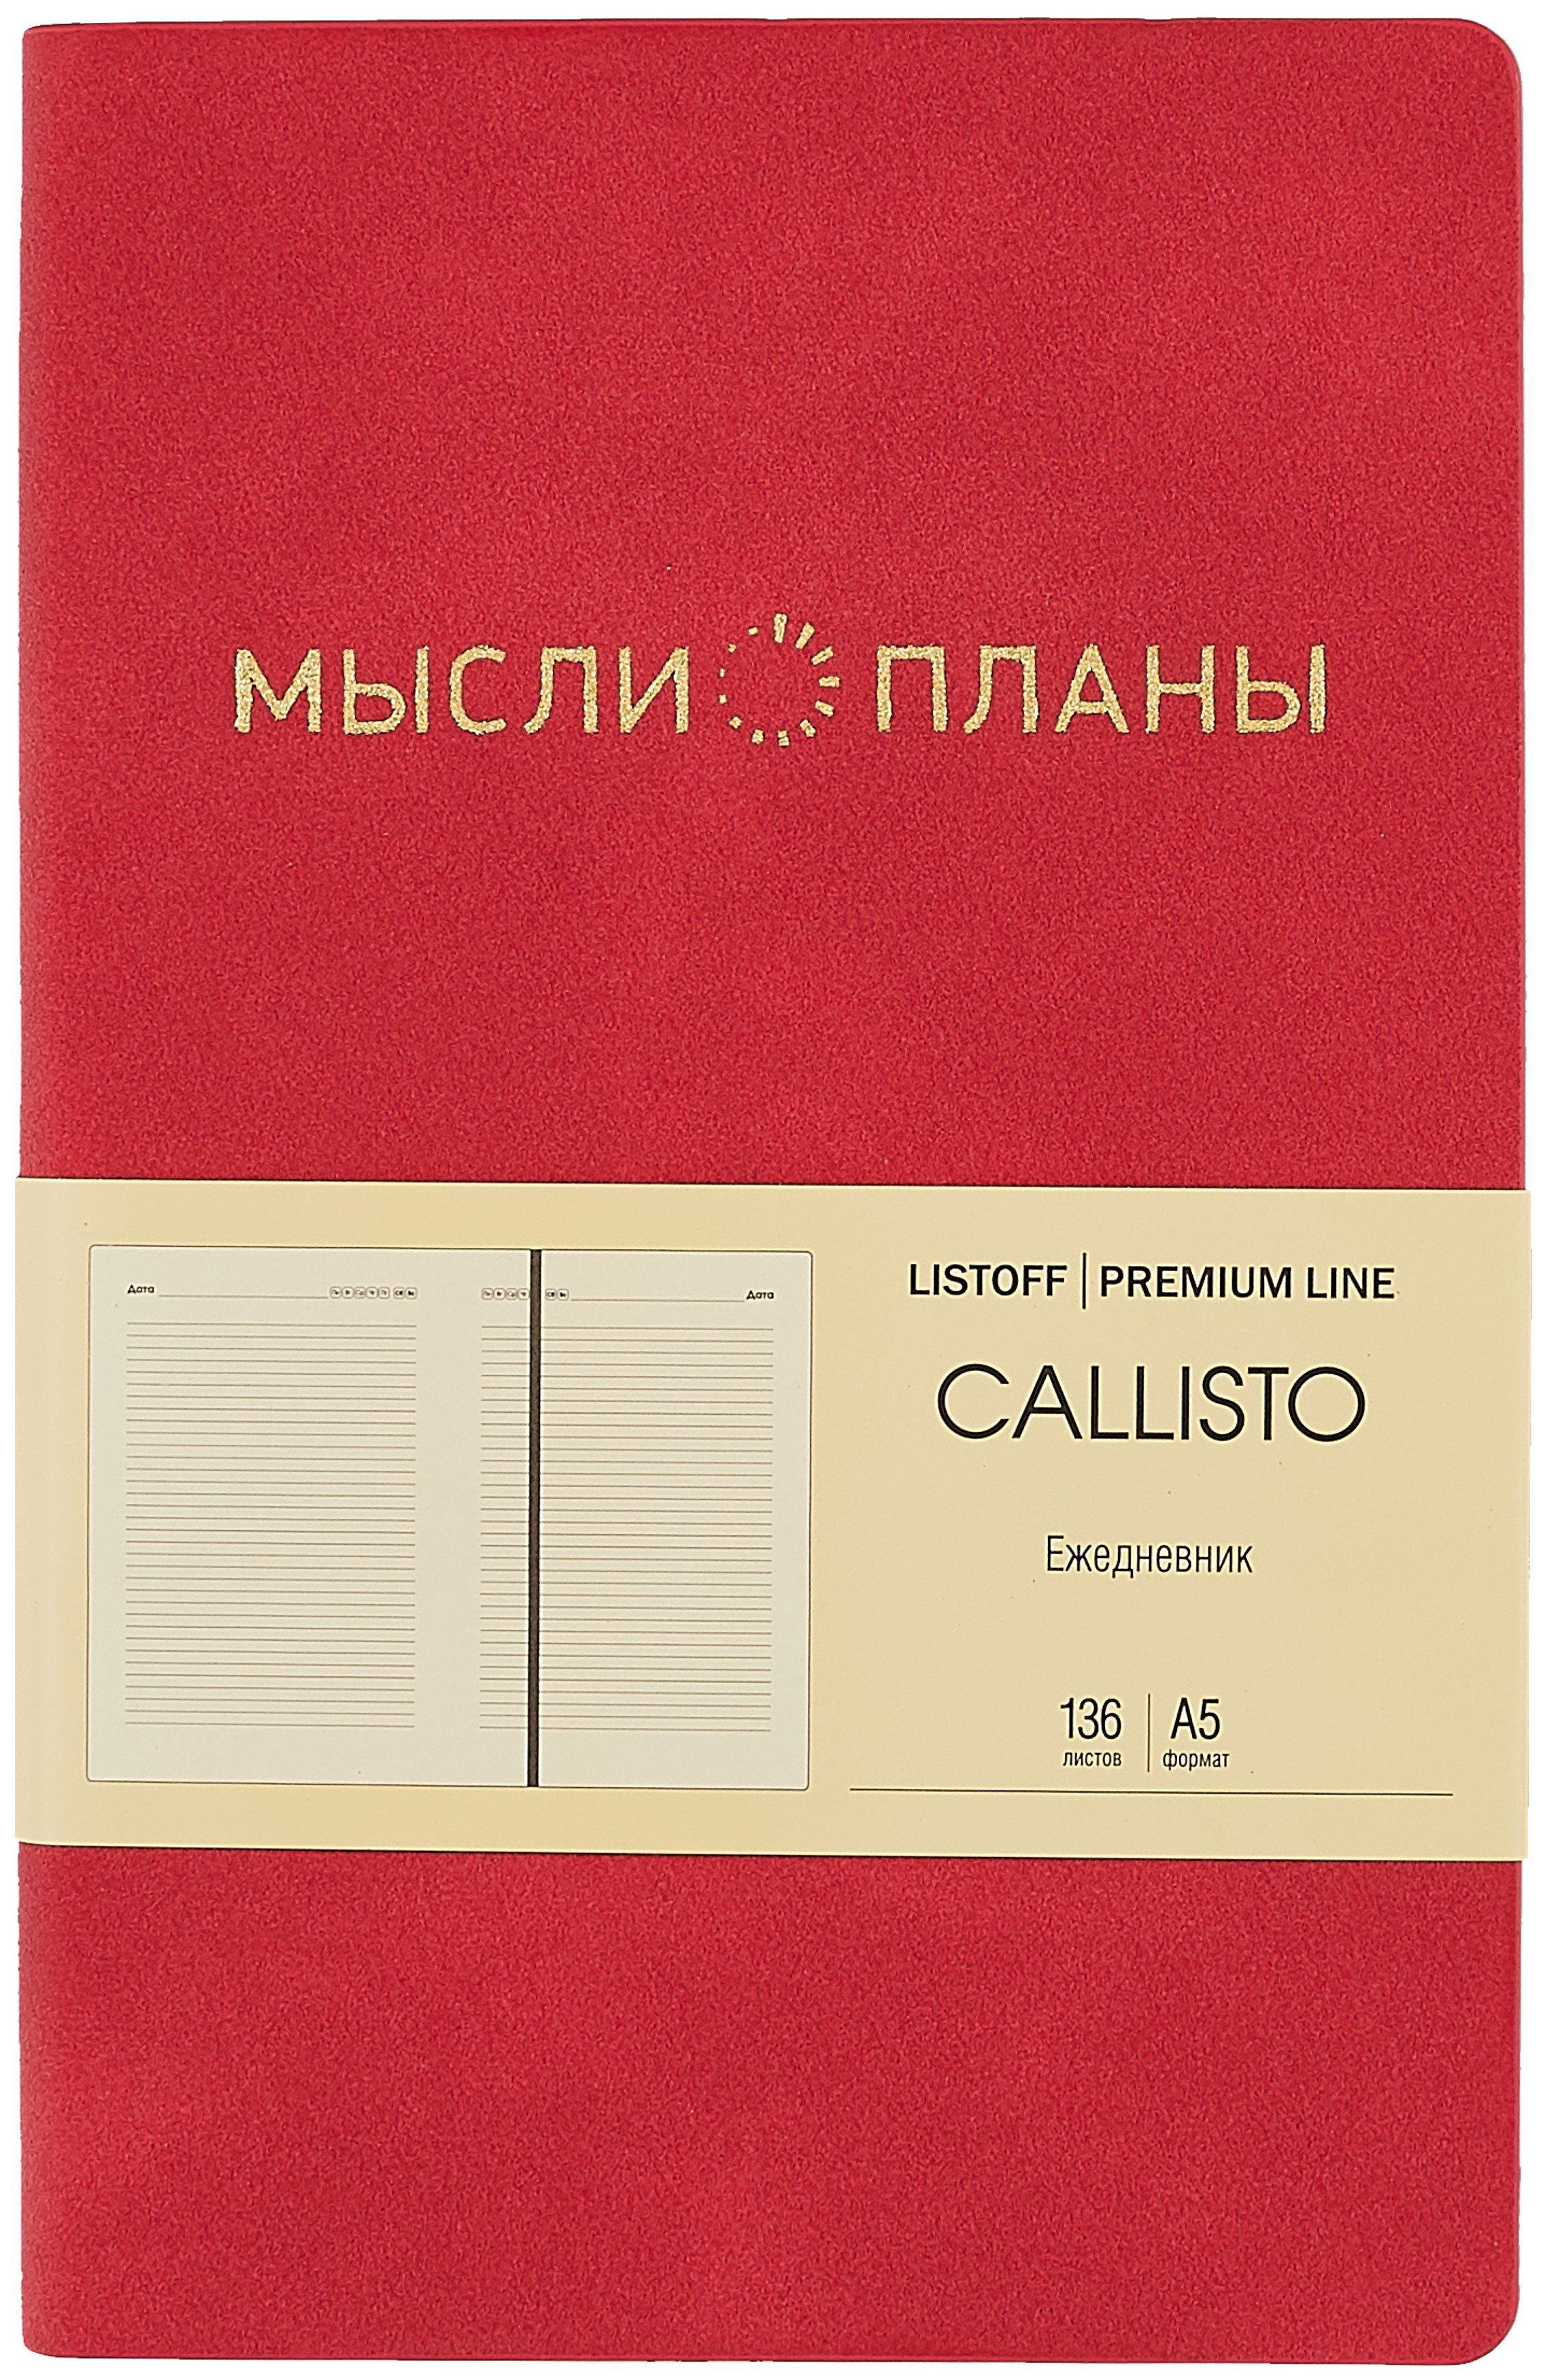  . 5 136  Callisto   , ., ., ., ., ., , 